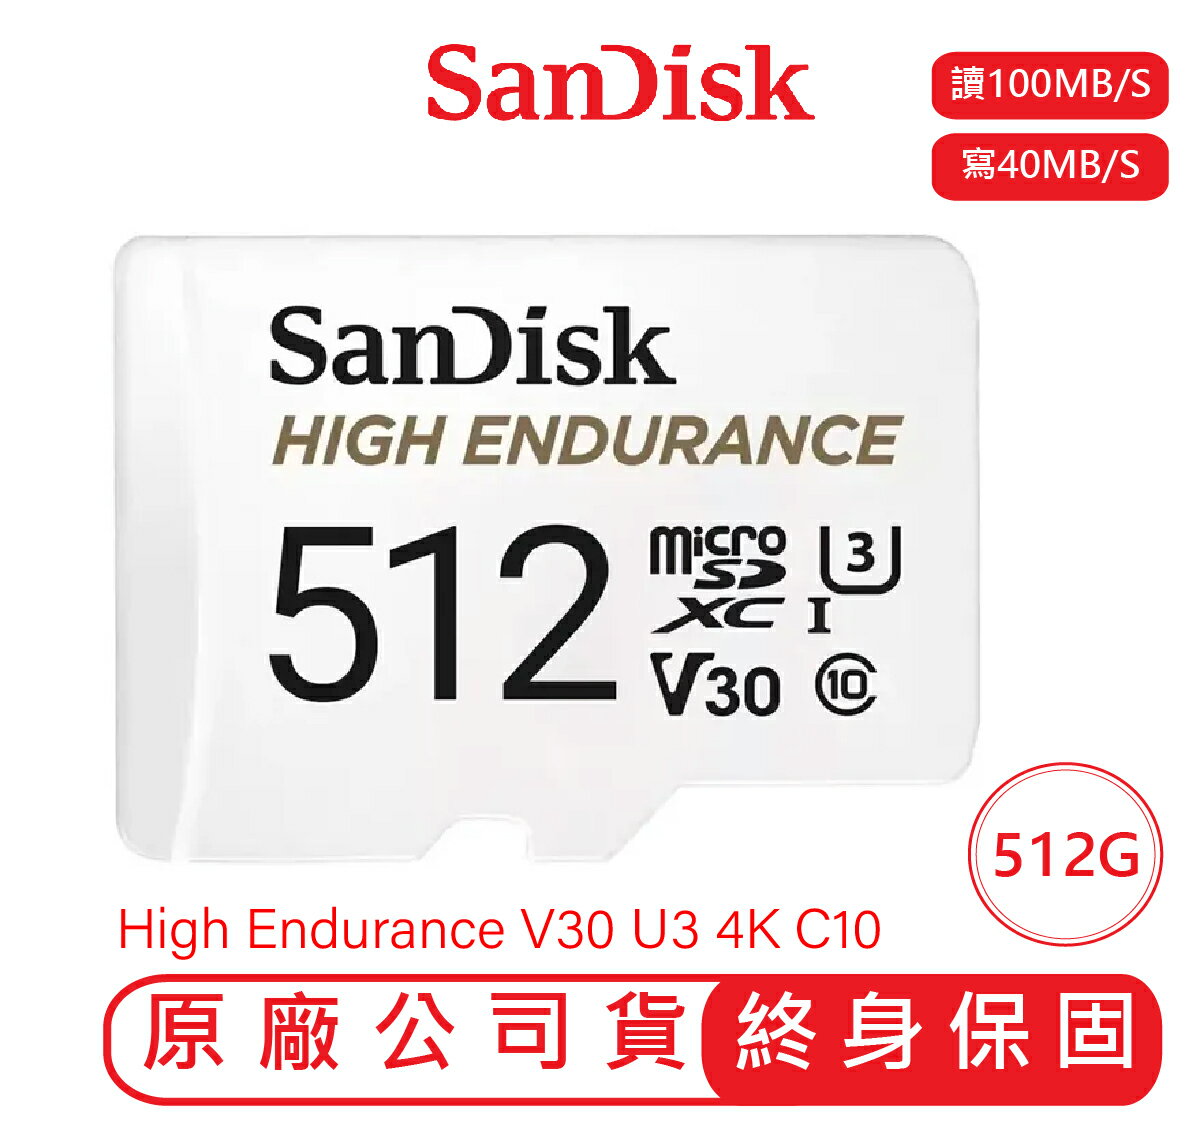 【最高22%點數】【SANDISK】極致耐寫度 HIGH ENDURANCE 512G 記憶卡 microSD QQNR【限定樂天APP下單】